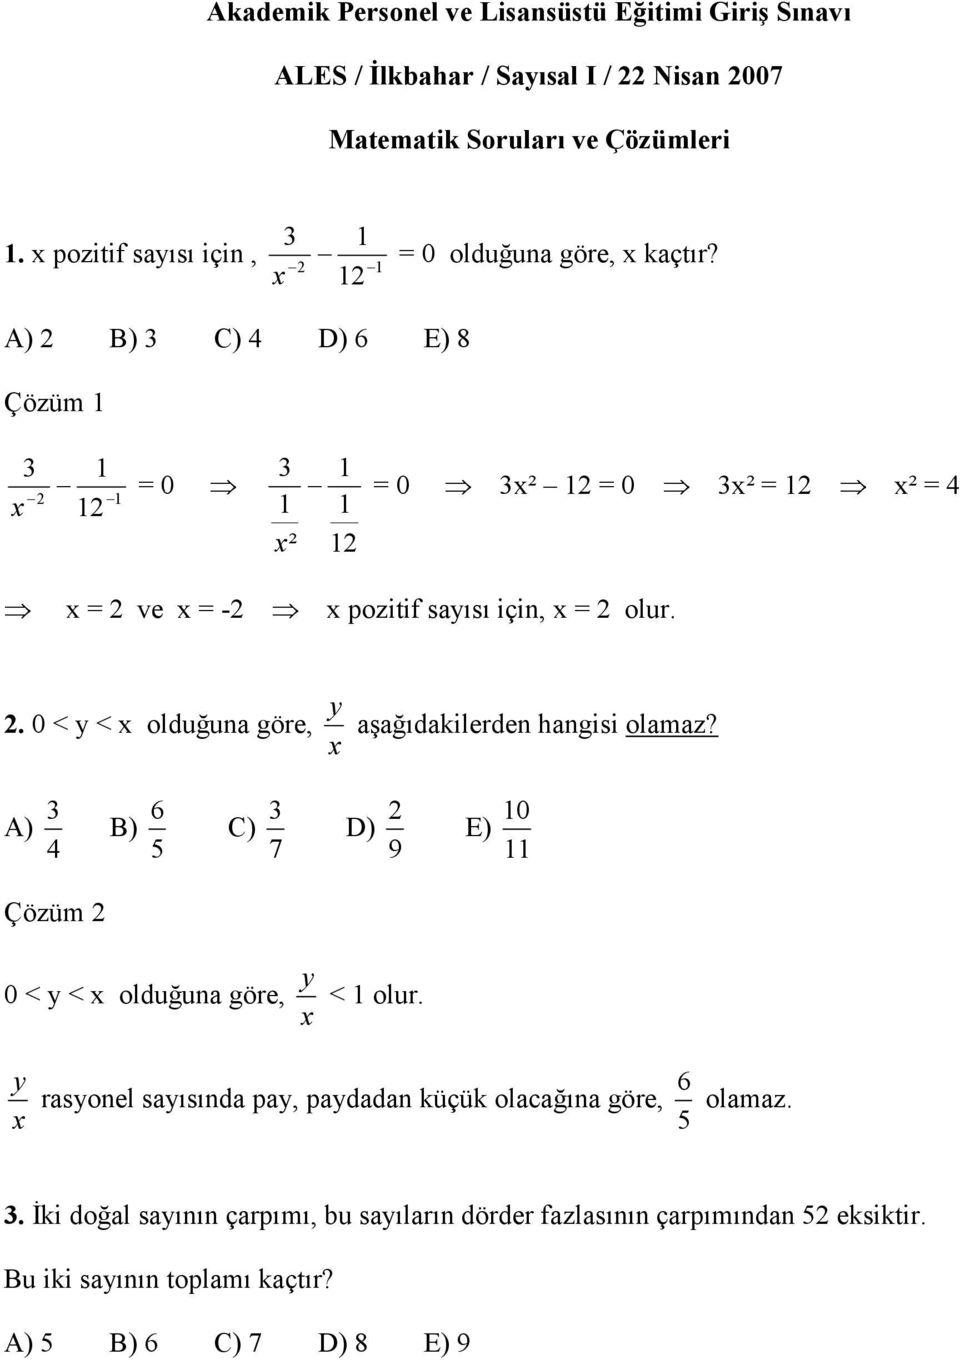 A) 2 B) 3 C) 4 D) 6 E) 8 Çözüm 1 3 x 2 1 12 1 = 0 3 1 x² 1 1 12 = 0 3x² 12 = 0 3x² = 12 x² = 4 x = 2 ve x = -2 x pozitif sayısı için, x = 2 olur. 2. 0 < y < x olduğuna göre, x y aşağıdakilerden hangisi olamaz?